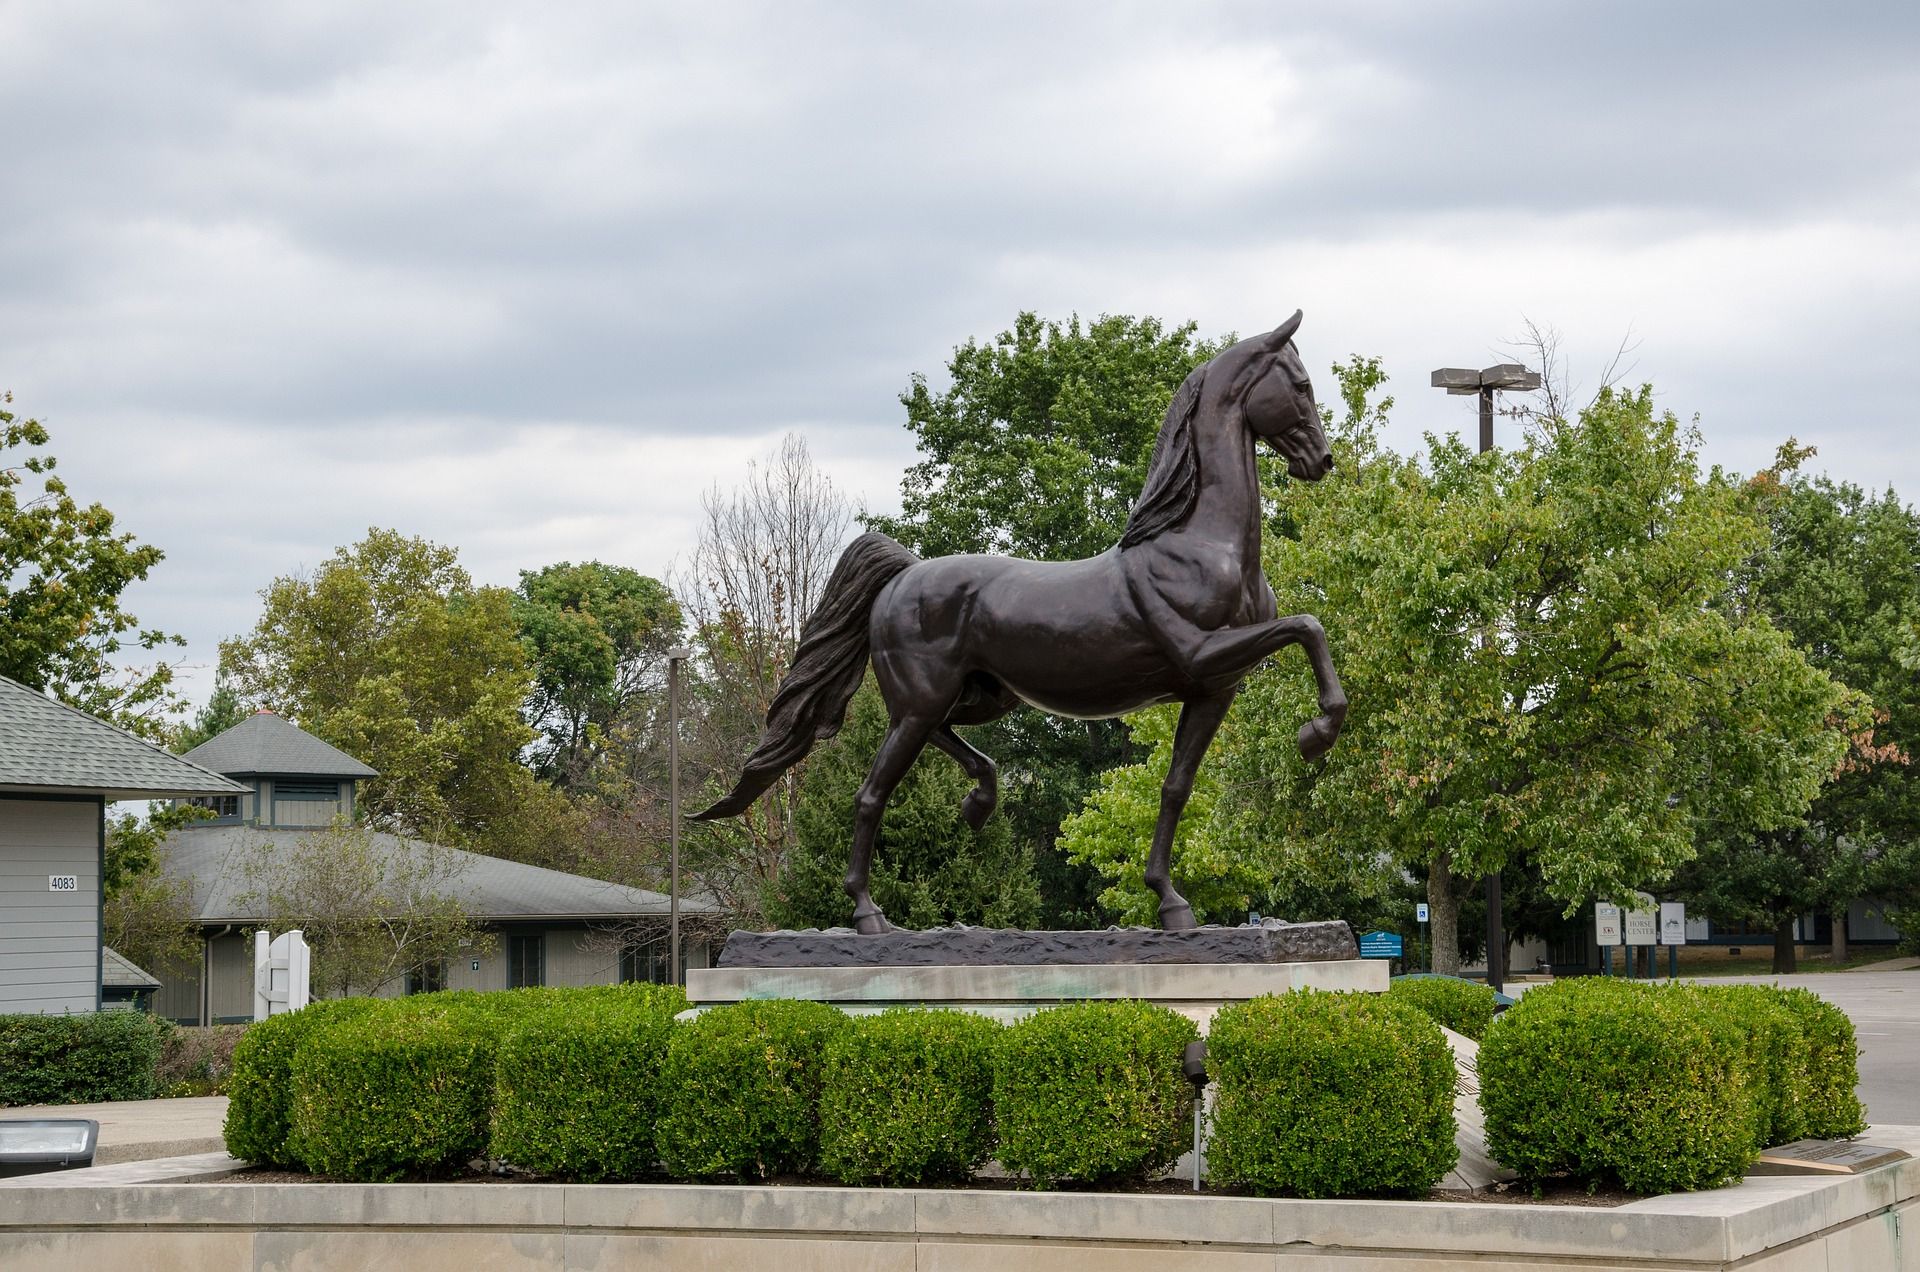 Kentucky Horse Park, a popular attraction in Lexington, Kentucky